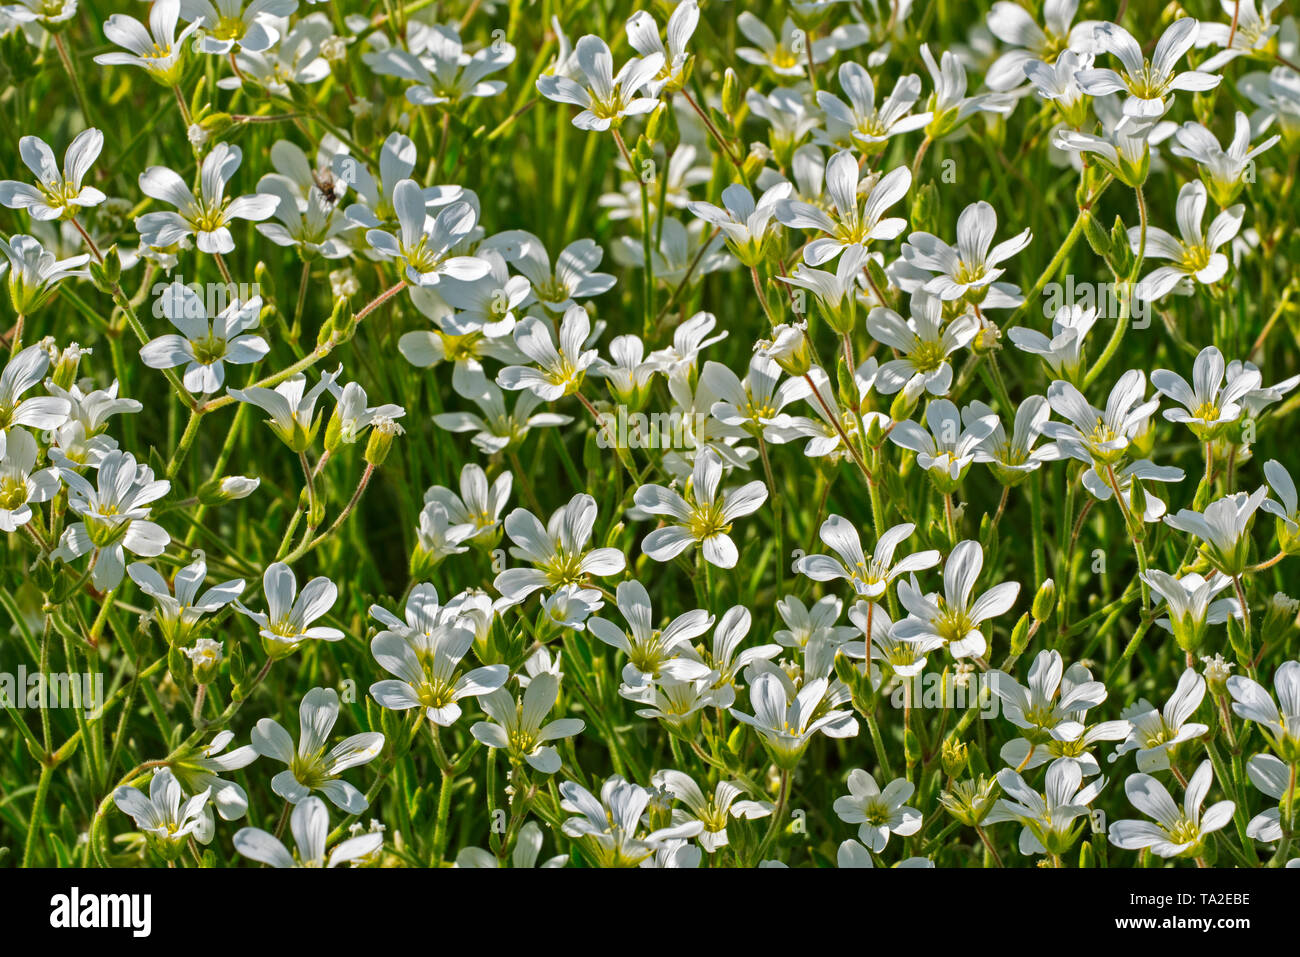 Snow-in-summer (Cerastium tomentosum) in flower Stock Photo